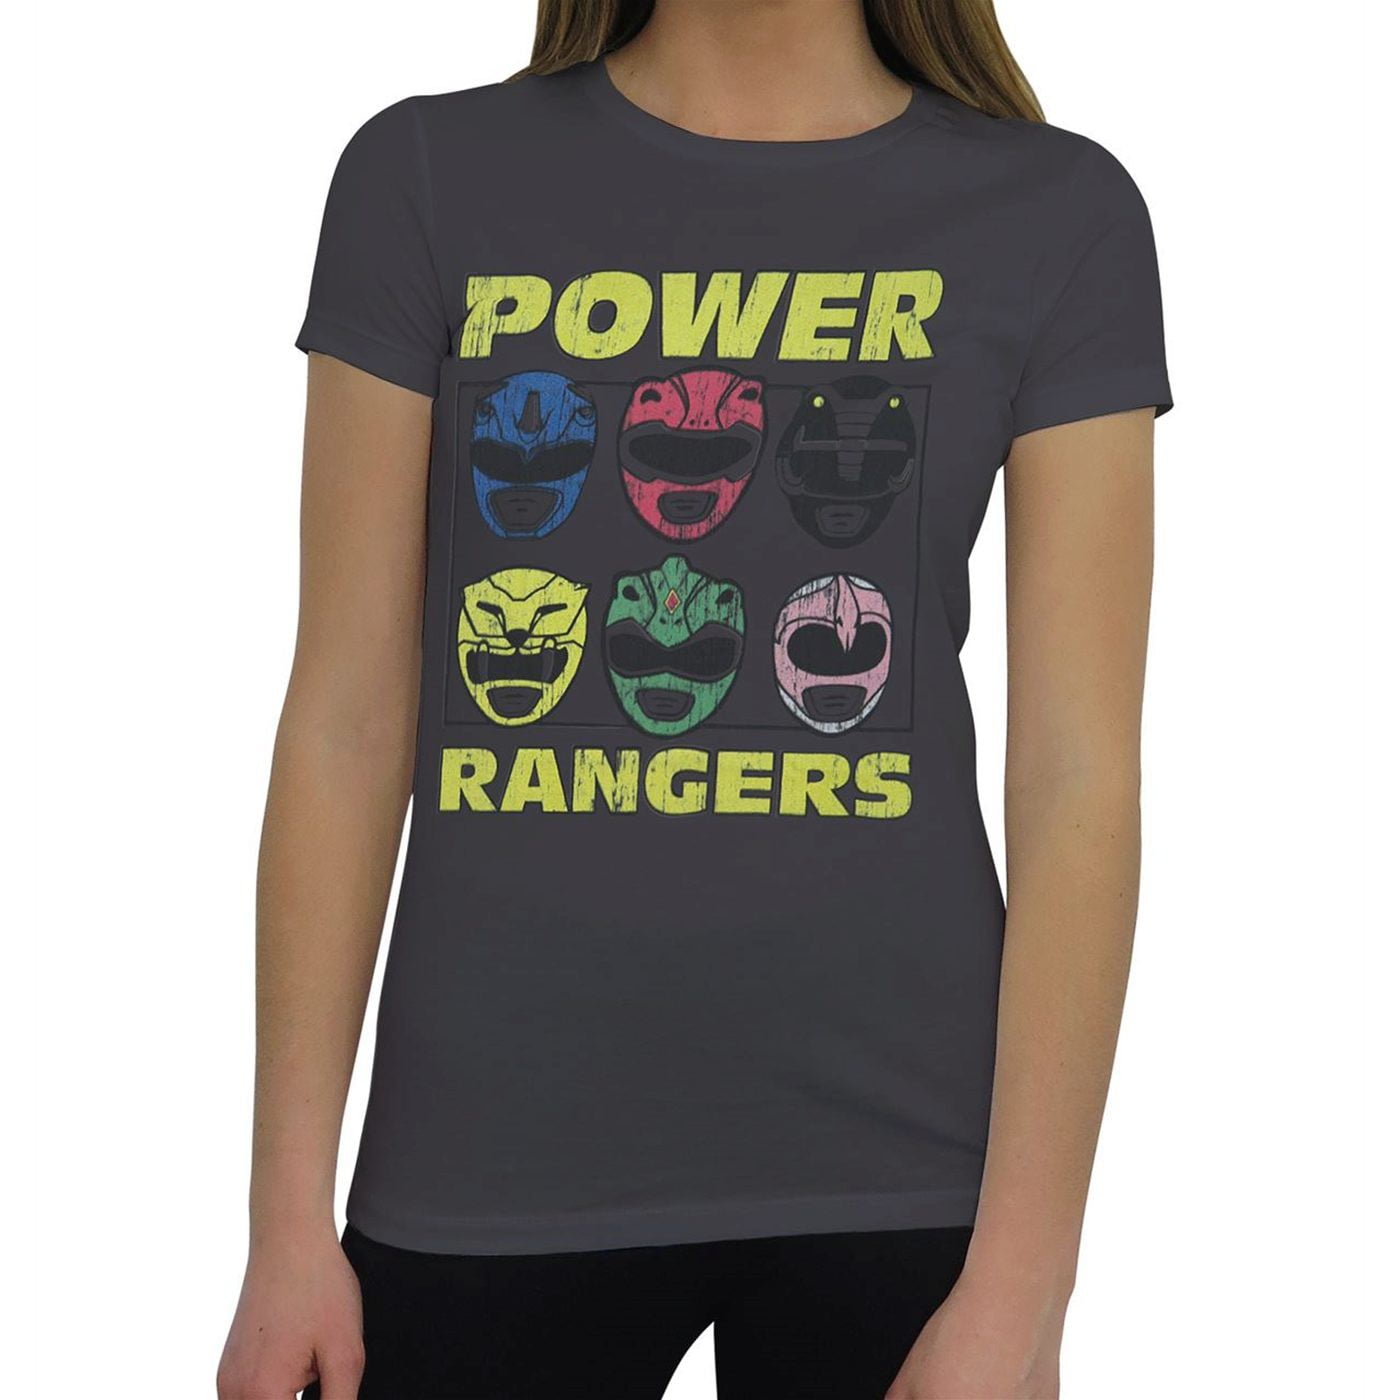 women's power ranger shirt